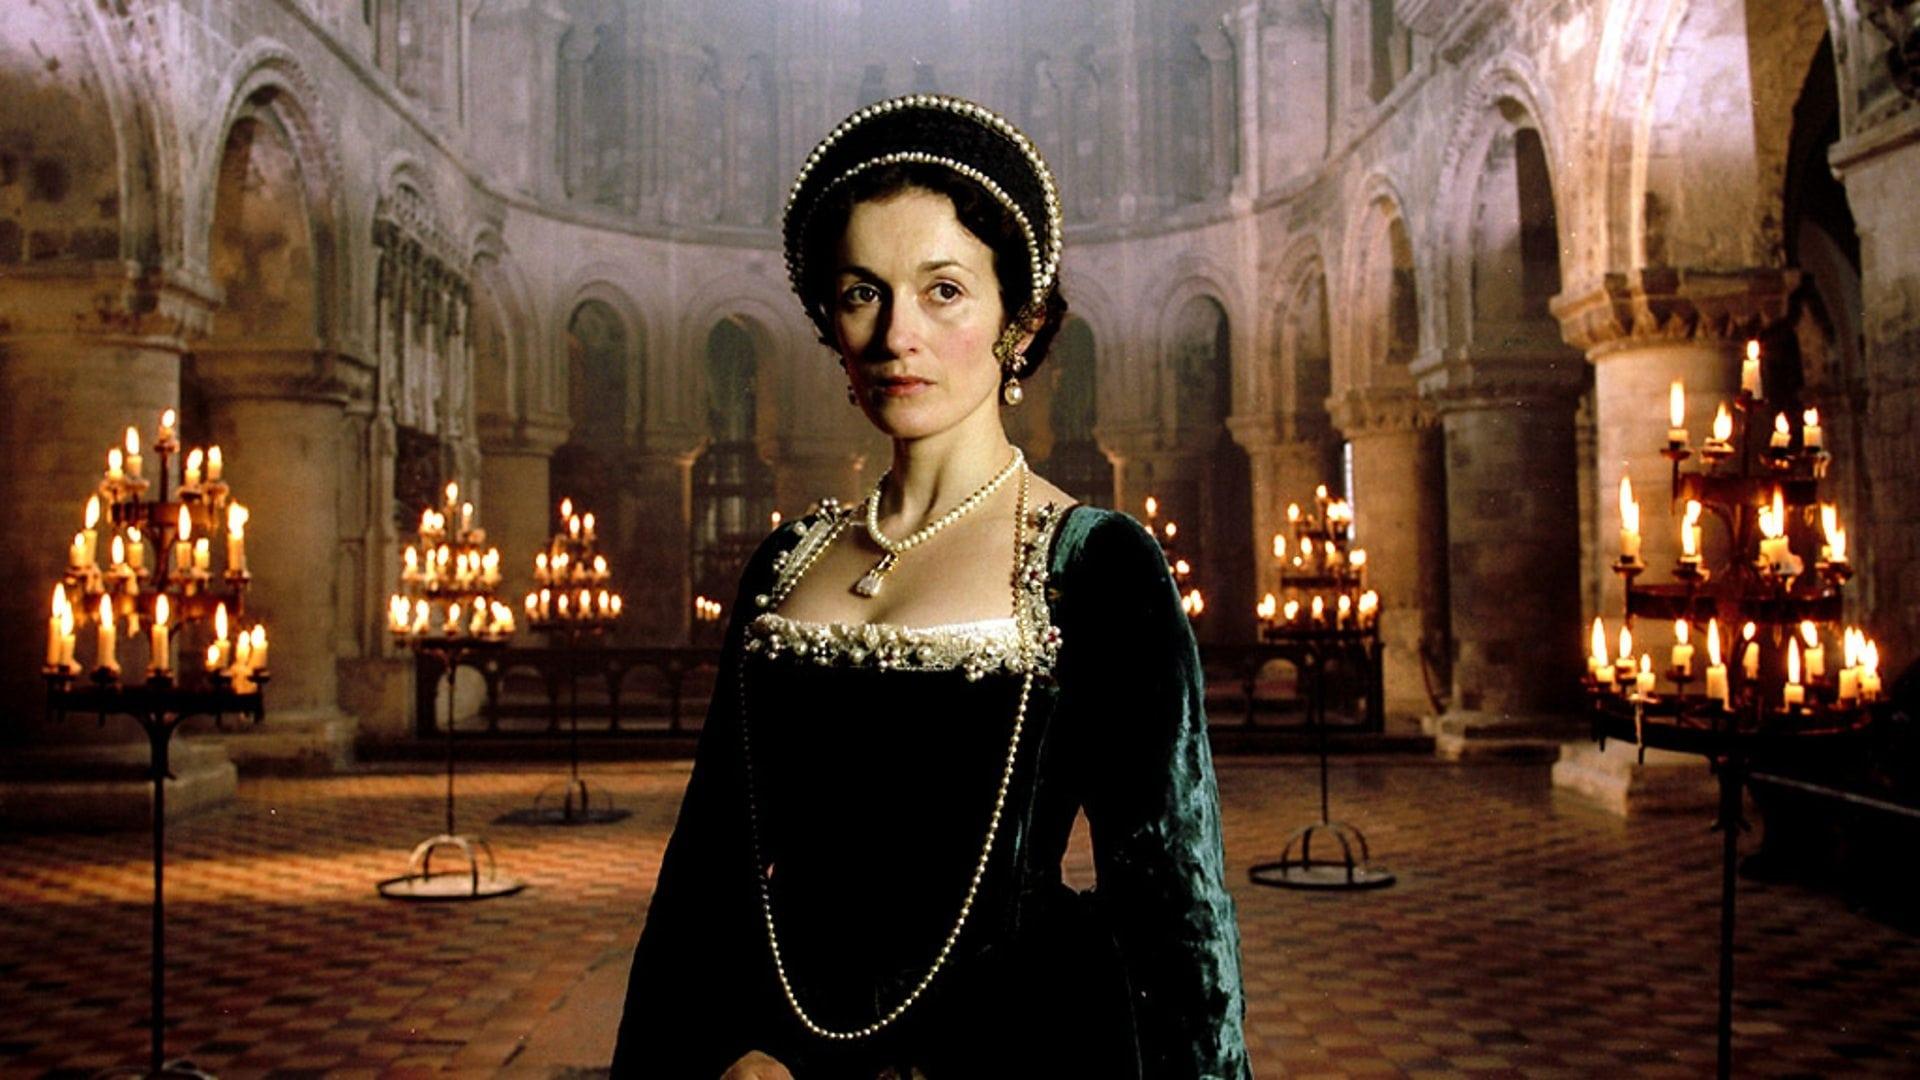 The Last Days of Anne Boleyn backdrop